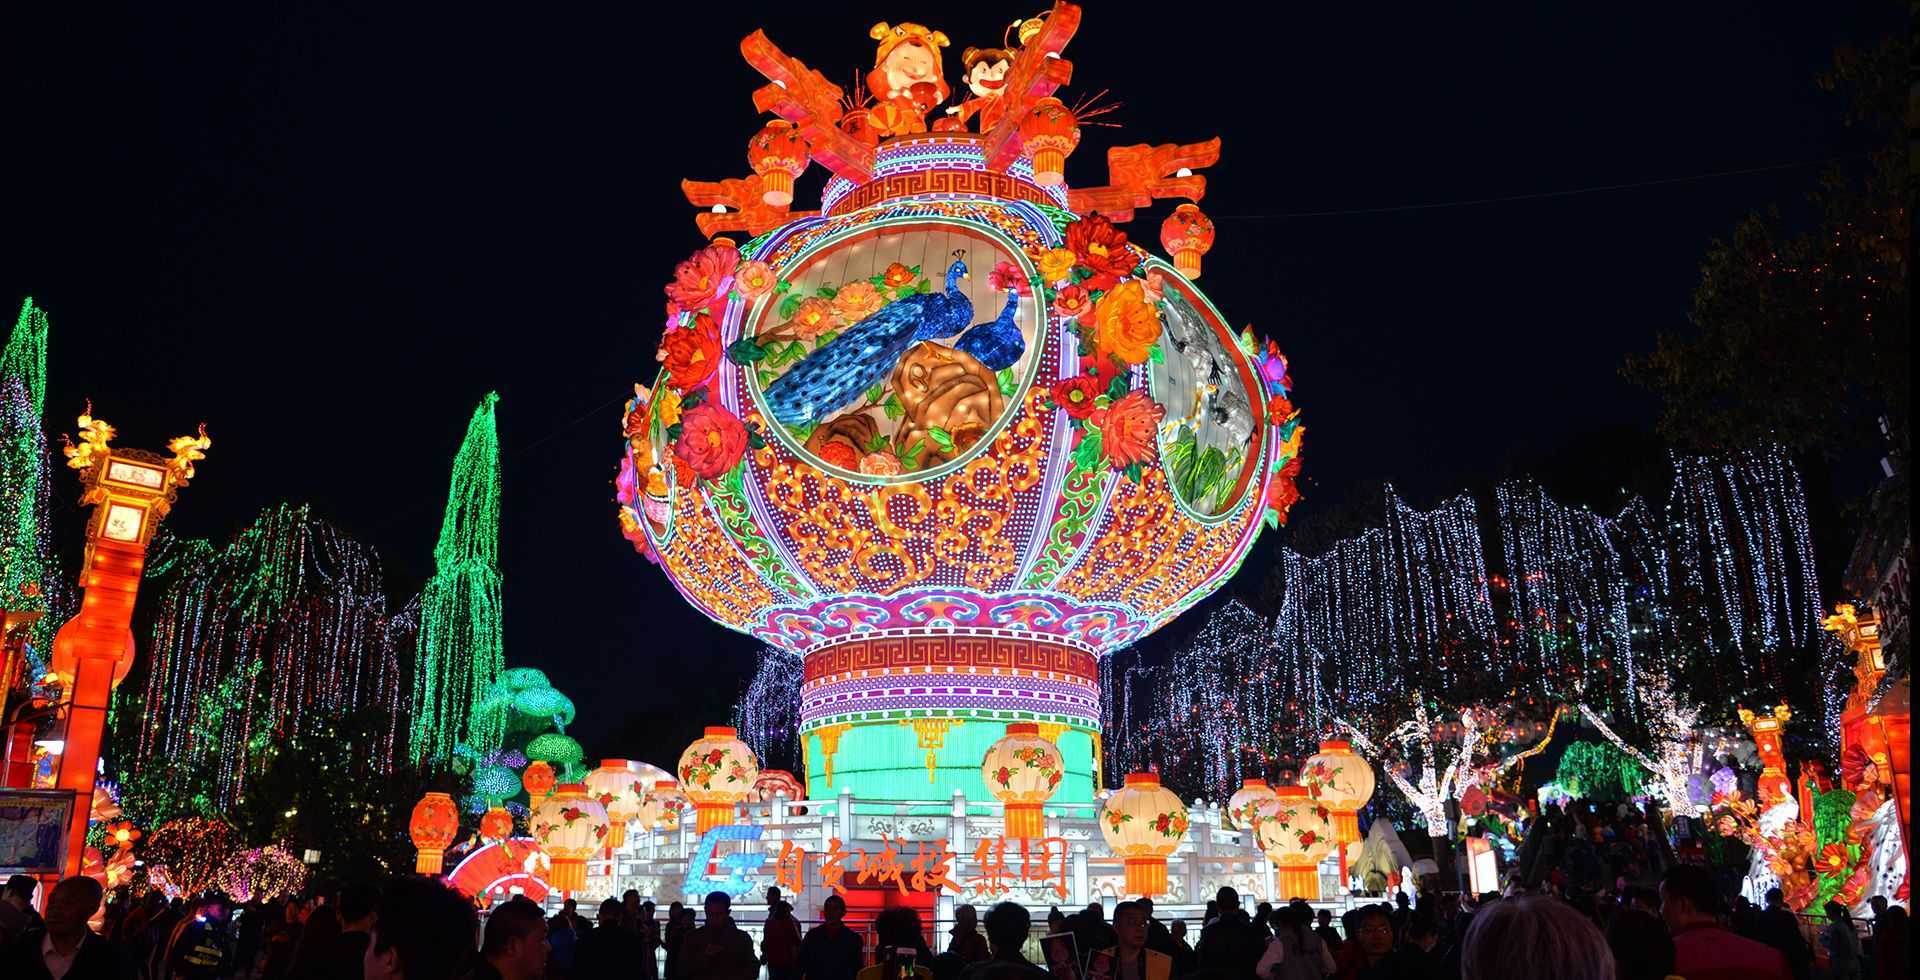 招标-广州市越秀公园2020年越秀花灯彩灯采购及配套服务项目公开招标公告